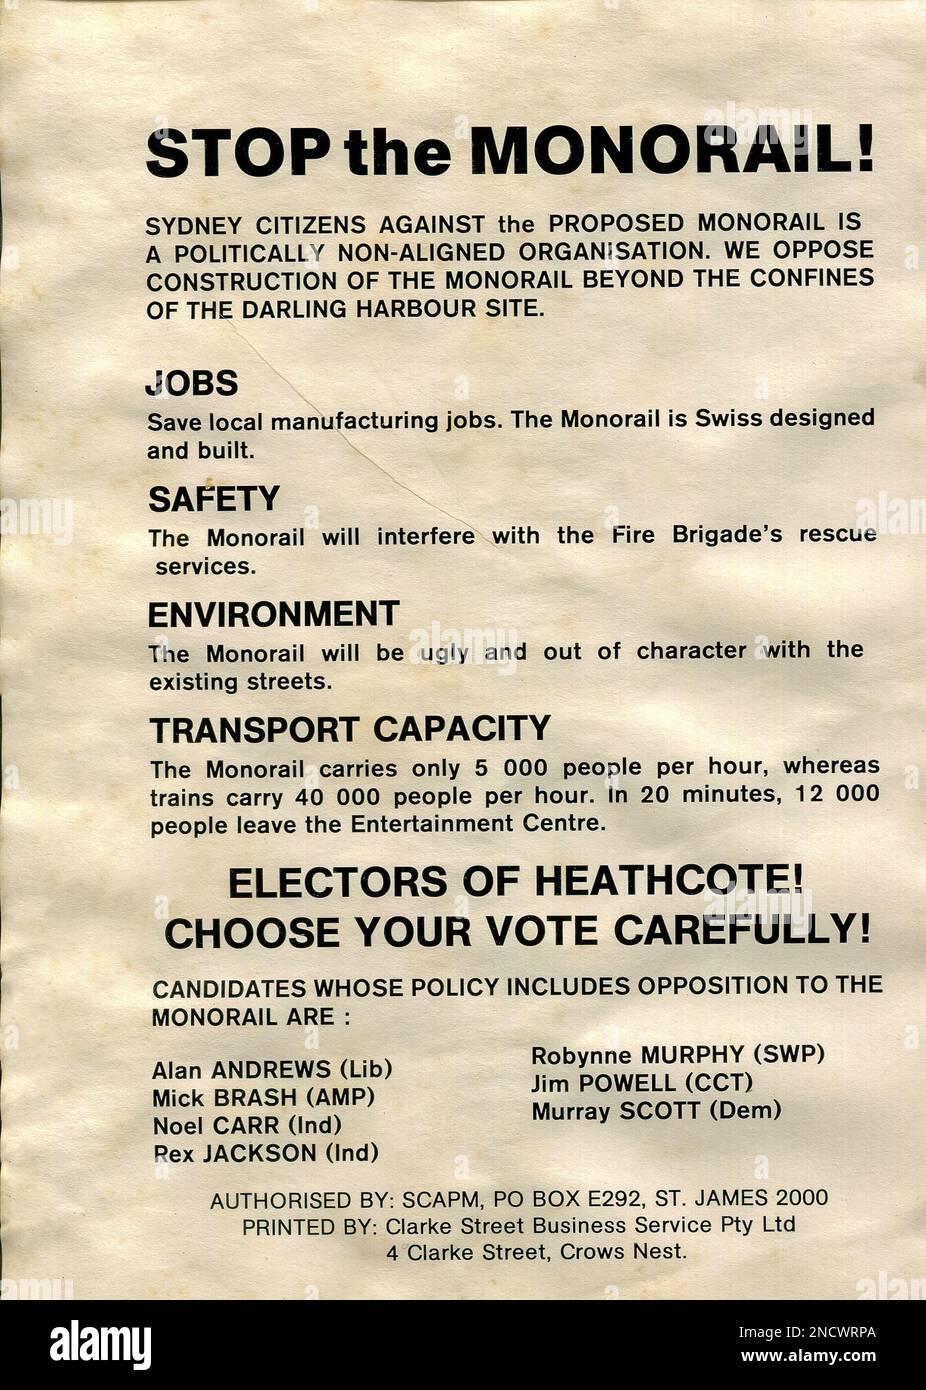 Die Sydney Monorail war ein kleines öffentliches Nahverkehrssystem, das von 1988 bis 2013 Uhr auf einer 3,6km m hohen, durchgehenden Strecke in Betrieb war. Die Bürger von Sydney gegen die geplante Monorail (SCAPM) wurden im Dezember 1985 gegründet und protestierten mit einer Kombination aus hochrangigen Australiern gegen den Bau der Eisenbahnstrecke und Lobbyarbeit gegen diese. Es handelte sich um eine Broschüre oder ein Handout, die/das für SCAPM gedruckt wurde und sich an Wähler in der Heathcoat-Wählerschaft richtete Stockfoto